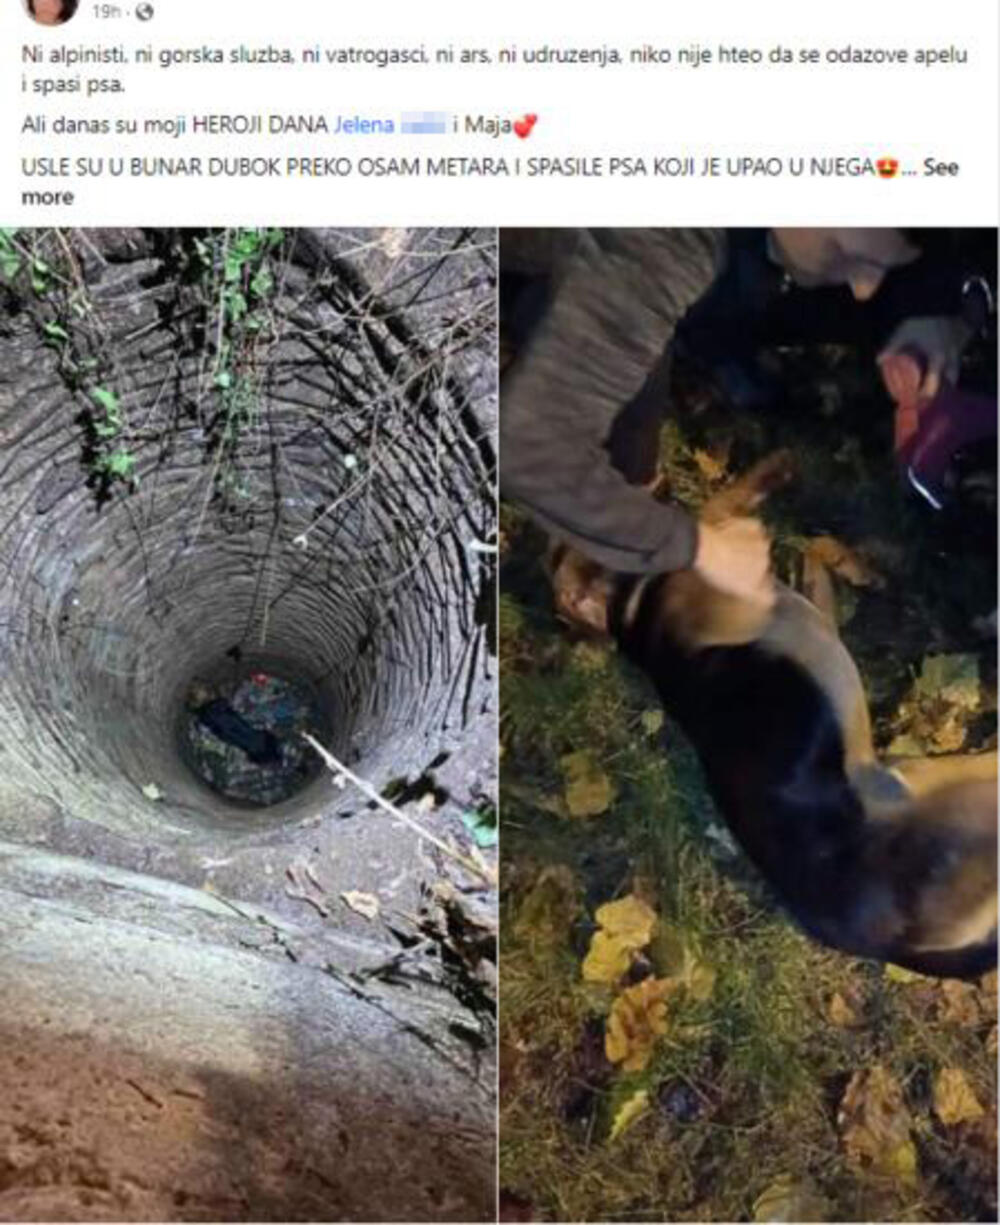 pas, bunar, spasavanje psa